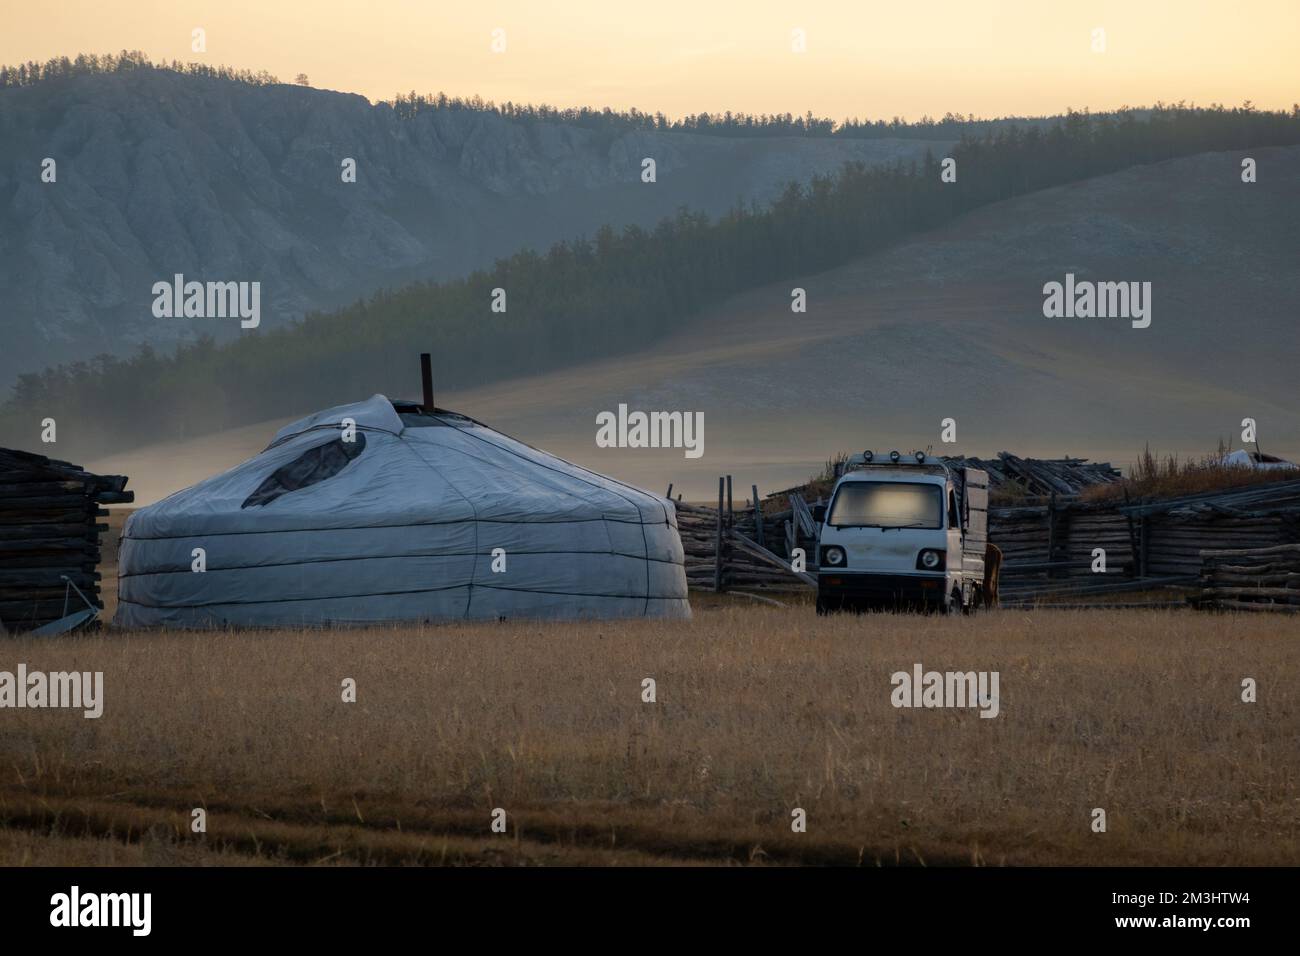 Yurt nomade in campagna con le montagne sullo sfondo in una serata di sole. Tenda GER nel paese rurale circondato da boschi e colline, Foto Stock